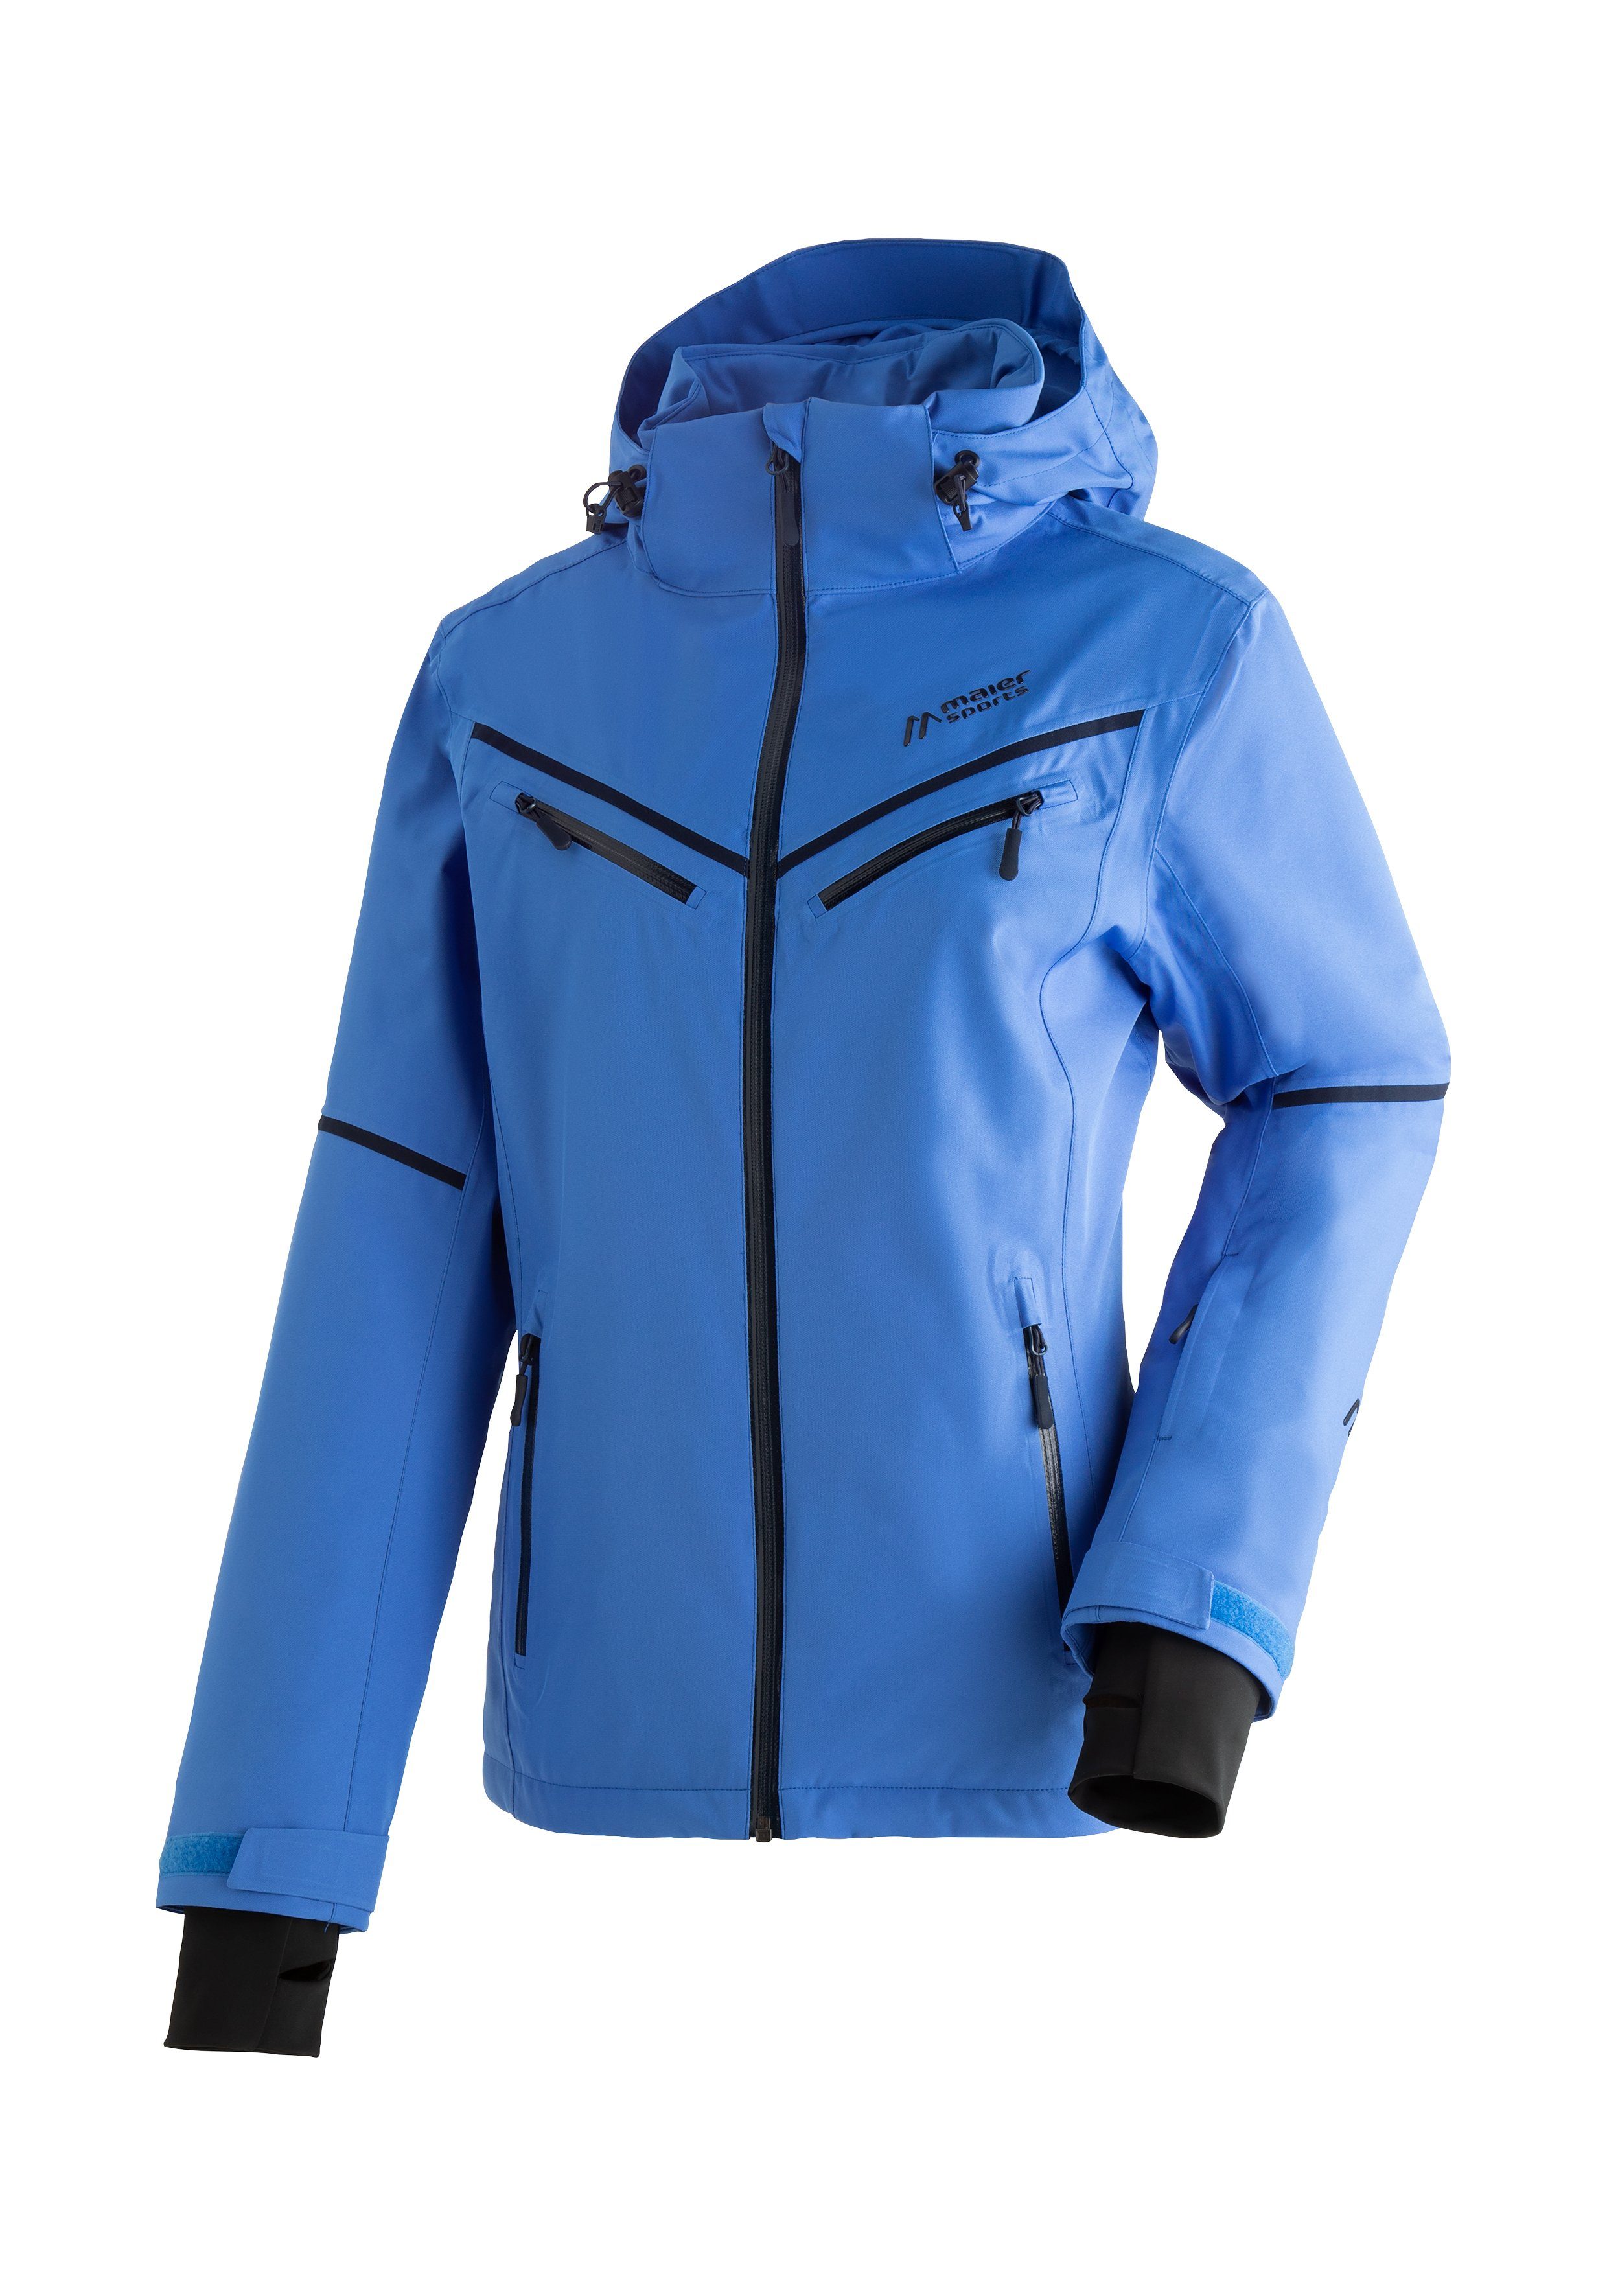 Maier Sports und Winterjacke Skijacke Ski-Jacke, Damen winddichte Lunada pastellblau atmungsaktive wasserdichte